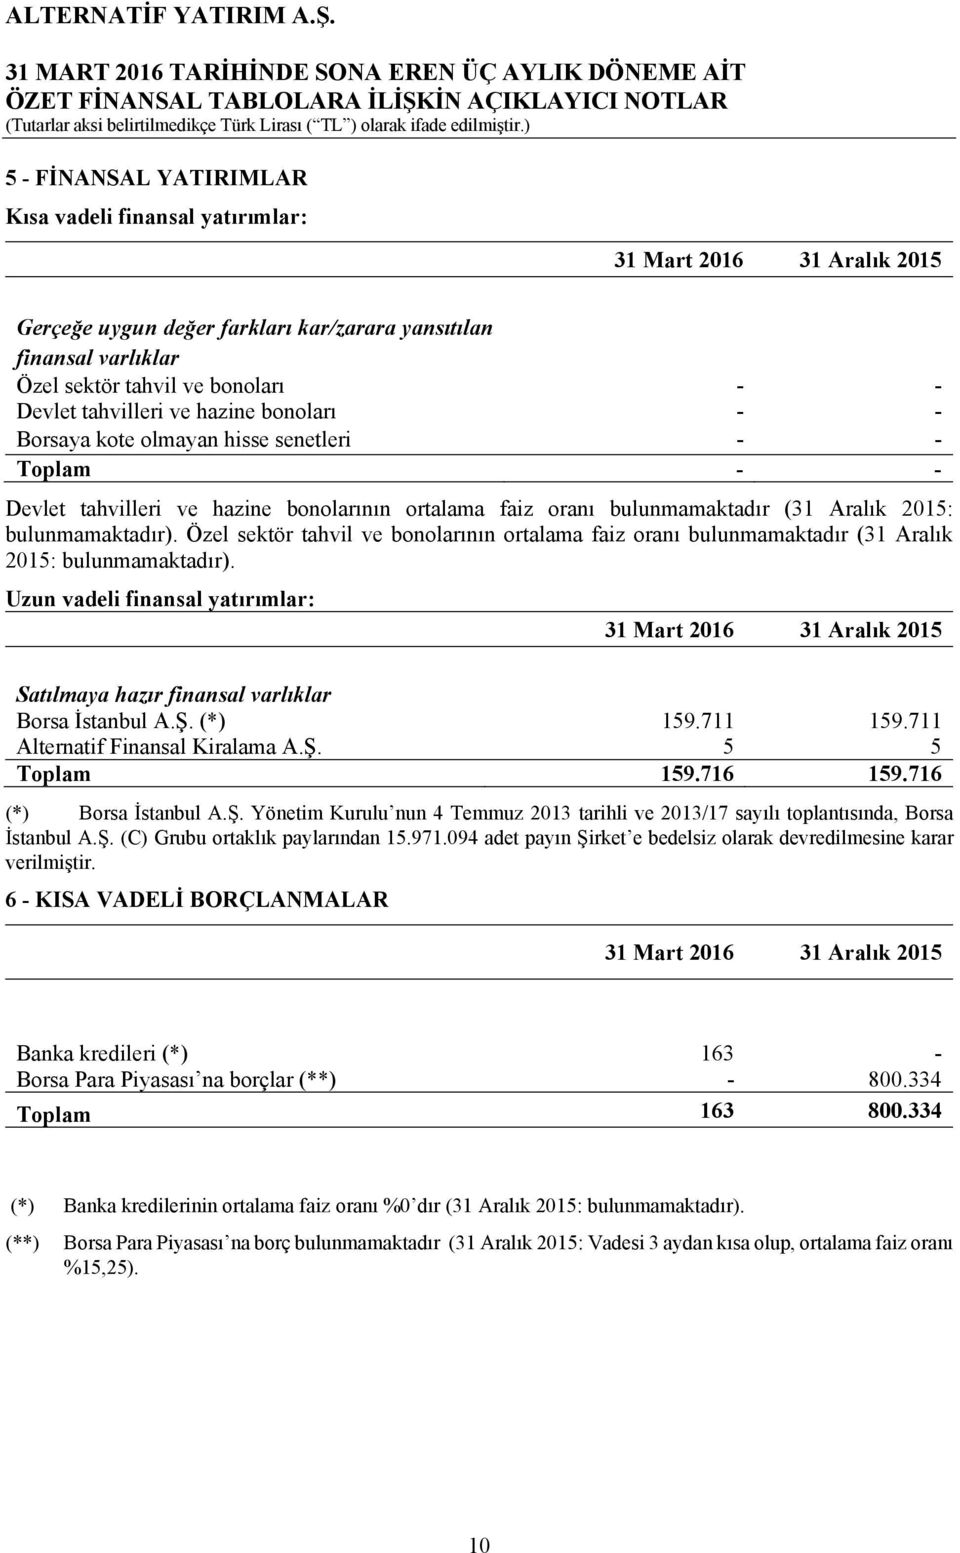 Özel sektör tahvil ve bonolarının ortalama faiz oranı bulunmamaktadır (31 Aralık 2015: bulunmamaktadır). Uzun vadeli finansal yatırımlar: Satılmaya hazır finansal varlıklar Borsa İstanbul A.Ş.